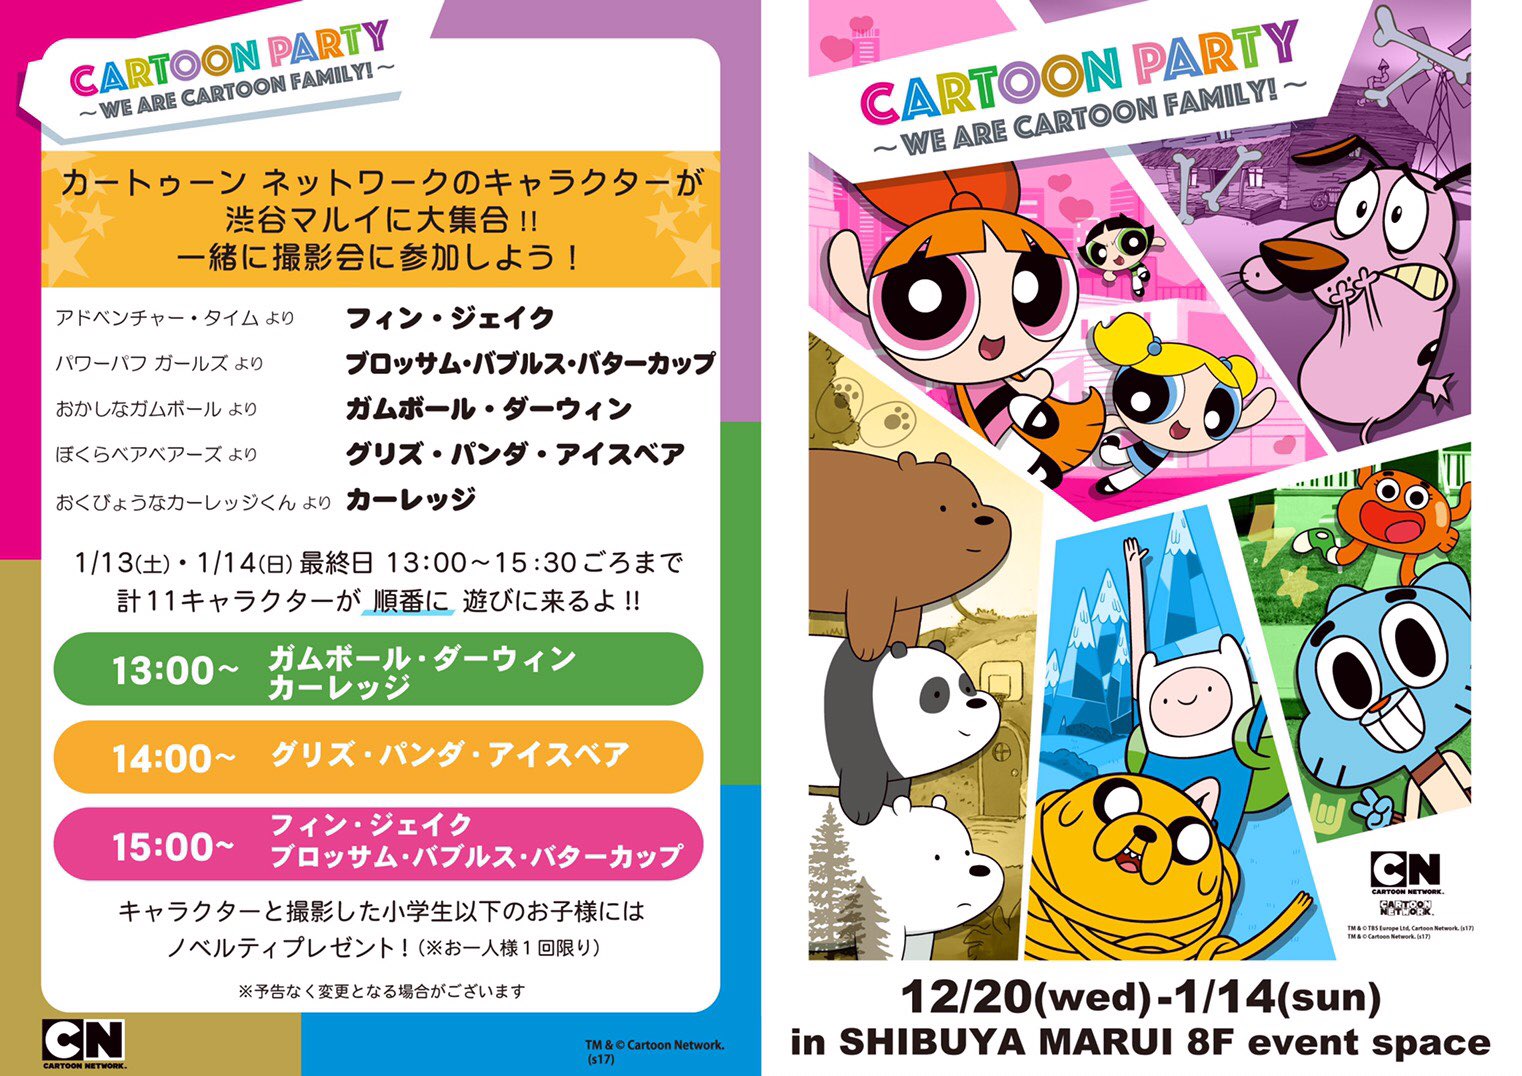 マルイノアニメ Cartoon Party 本日1 13 土 明日1 14 日 13時 14時 15時にカートゥーン ネットワークのキャラクターが渋谷マルイに全員集合 合計で全11キャラクターが遊びに来ます 一緒に撮影会に参加しよう T Co Qz5db38dsv T